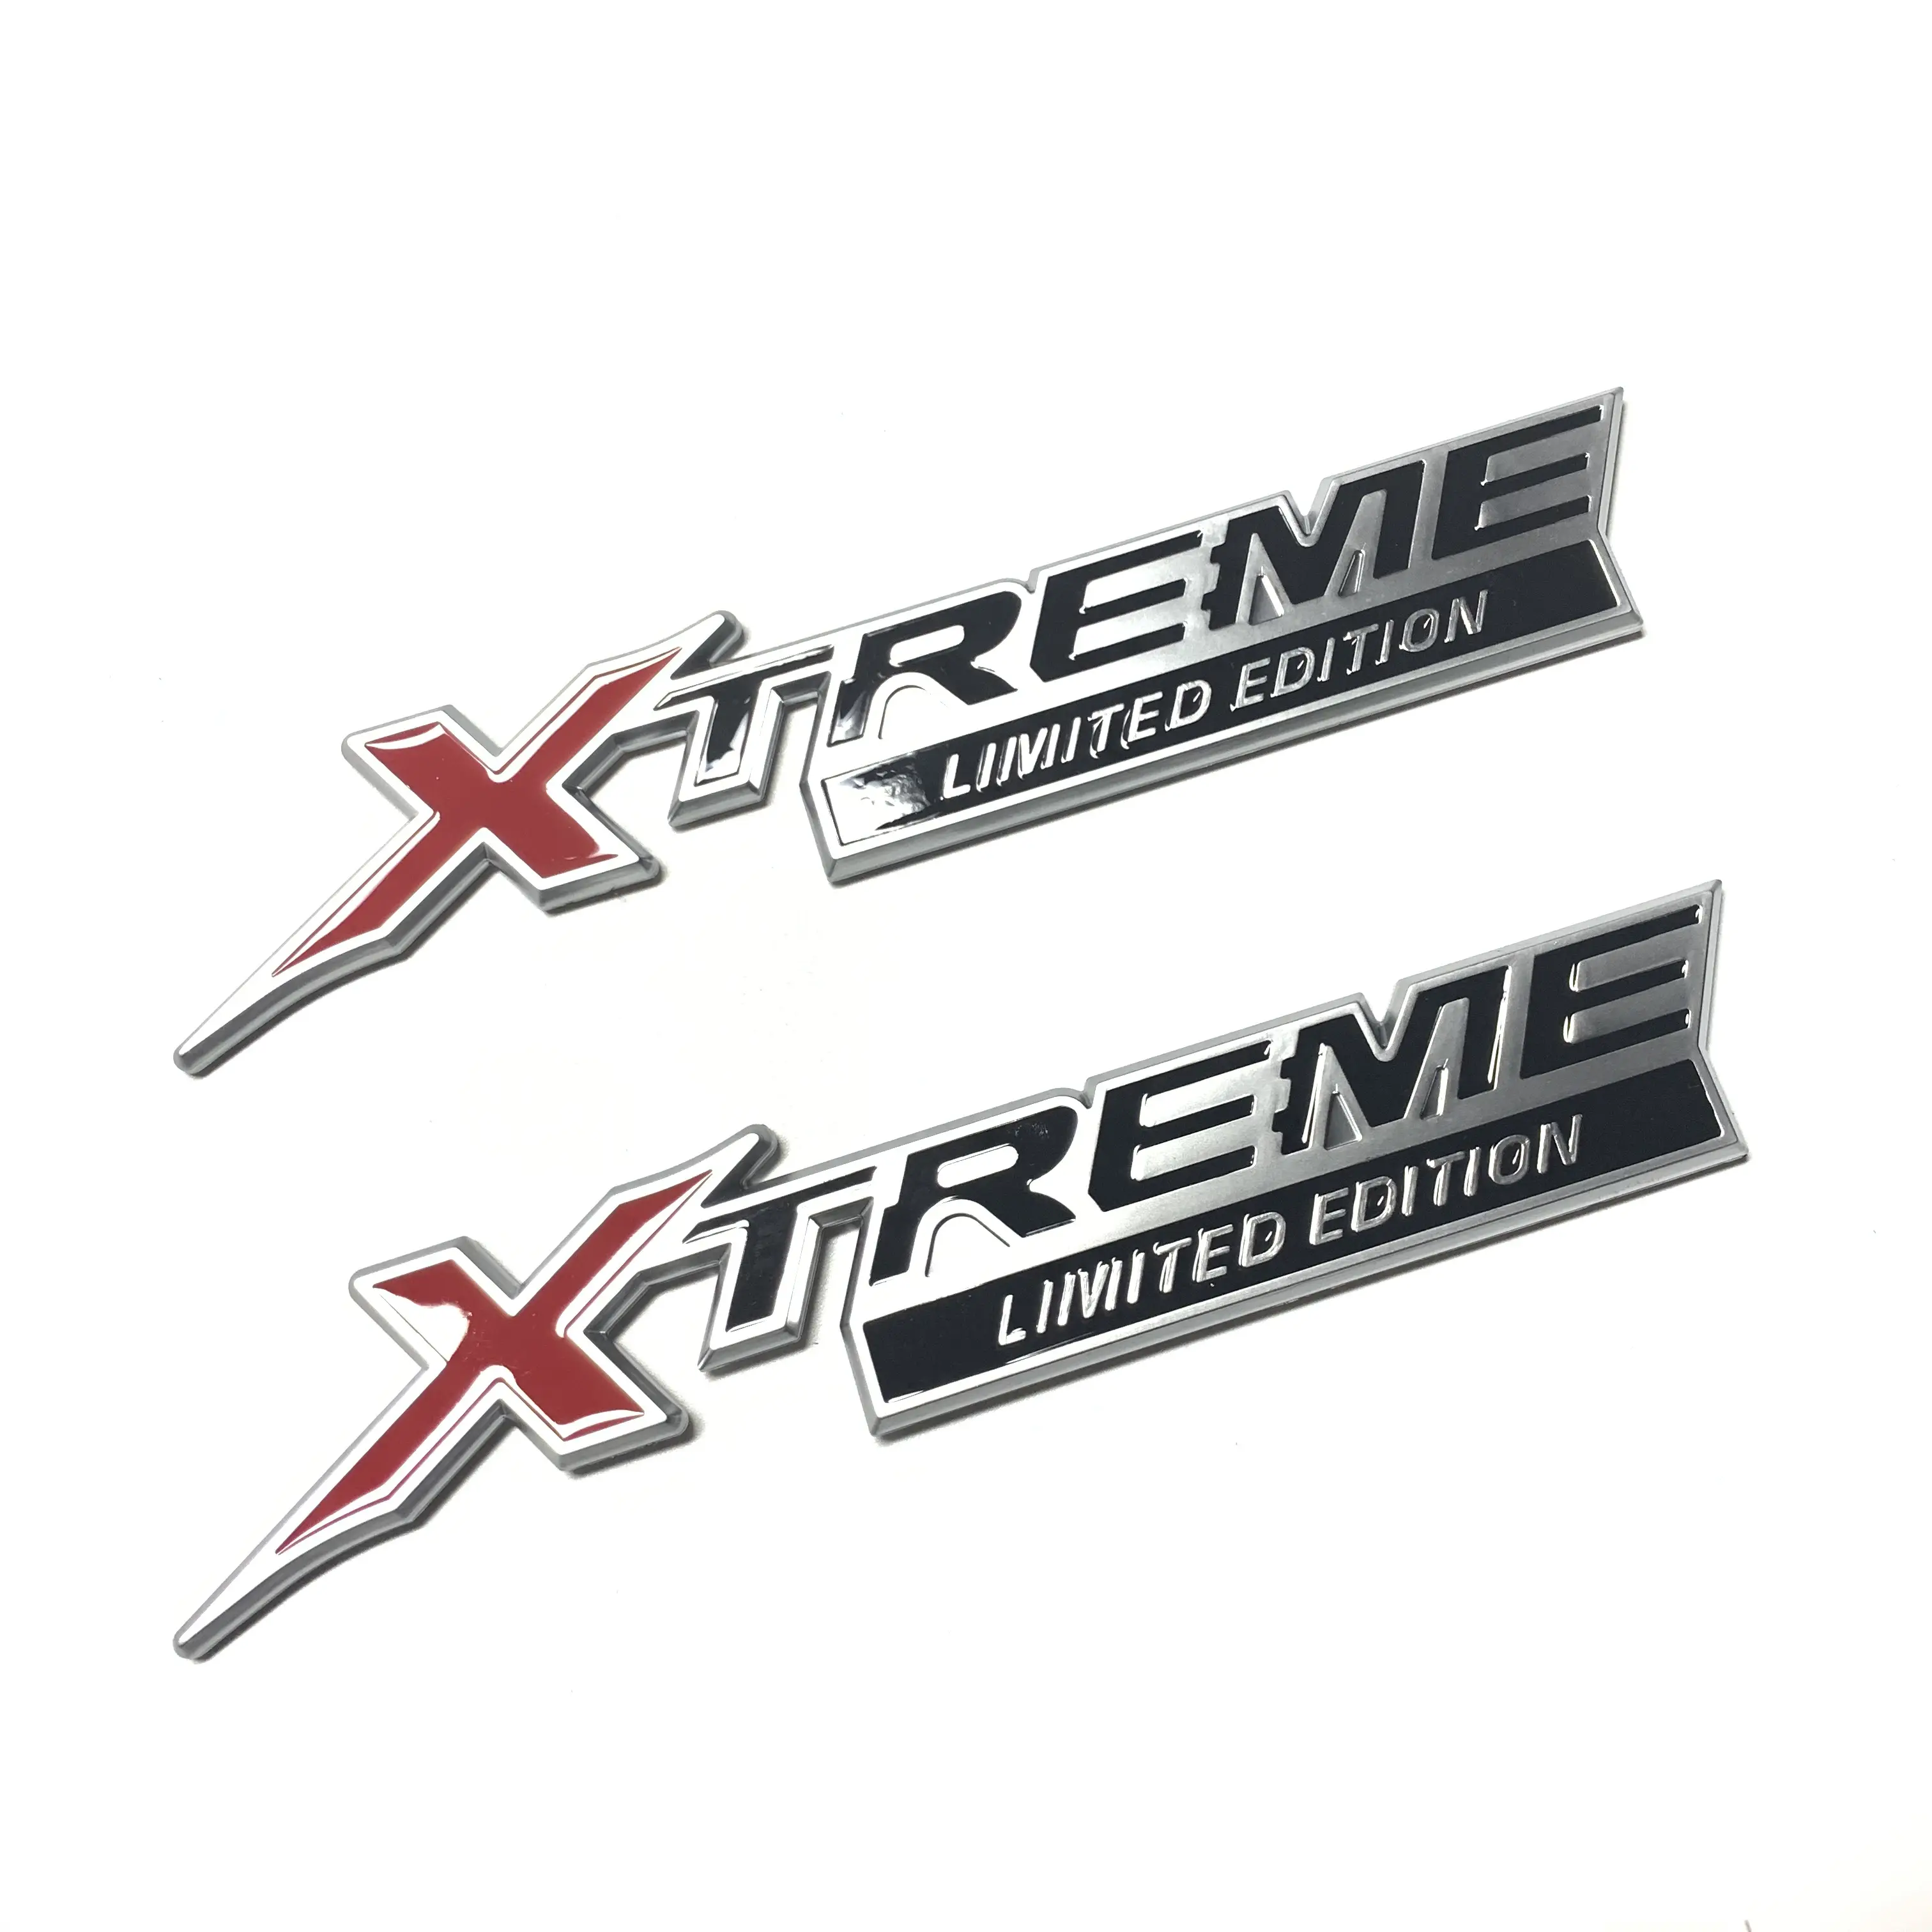 De ABS insignia emblemas diseño Xtreme edición cubierta de cromo pegatinas de coche para Toyota Land Cruiser